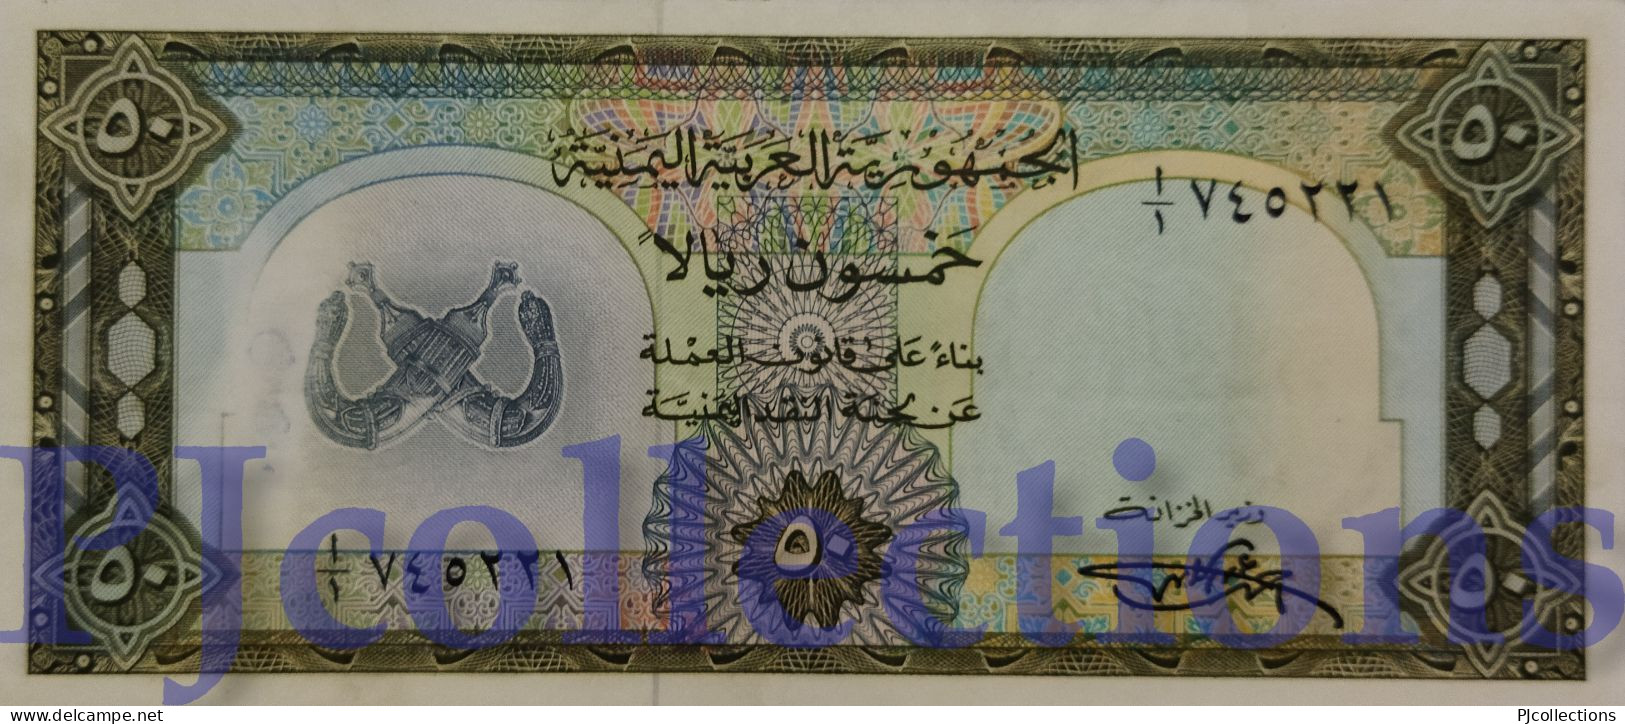 YEMEN ARAB REPUBLIC 50 RIELS 1971 PICK 10 XF+ - Yemen